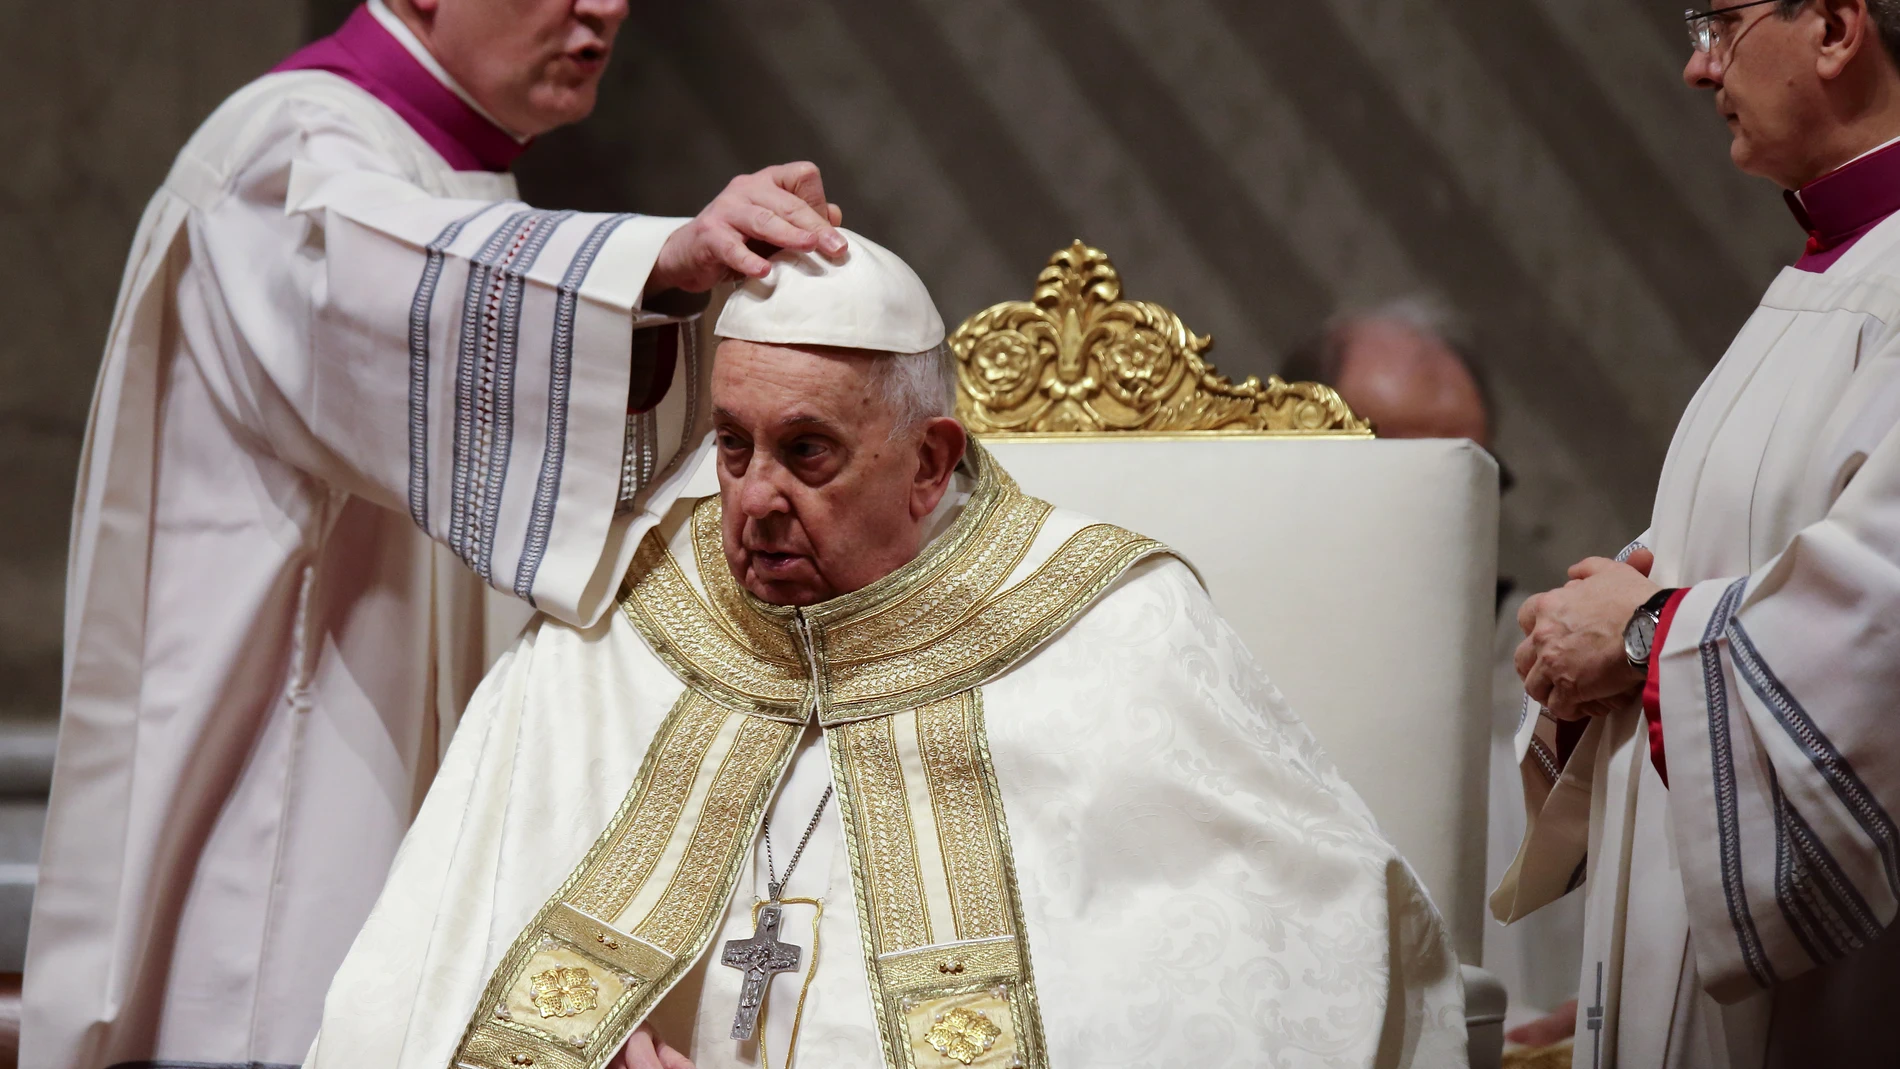 El Papa reclama más "espacio" para las mujeres en la Iglesia y exige que sean "respetadas" en todas las sociedades